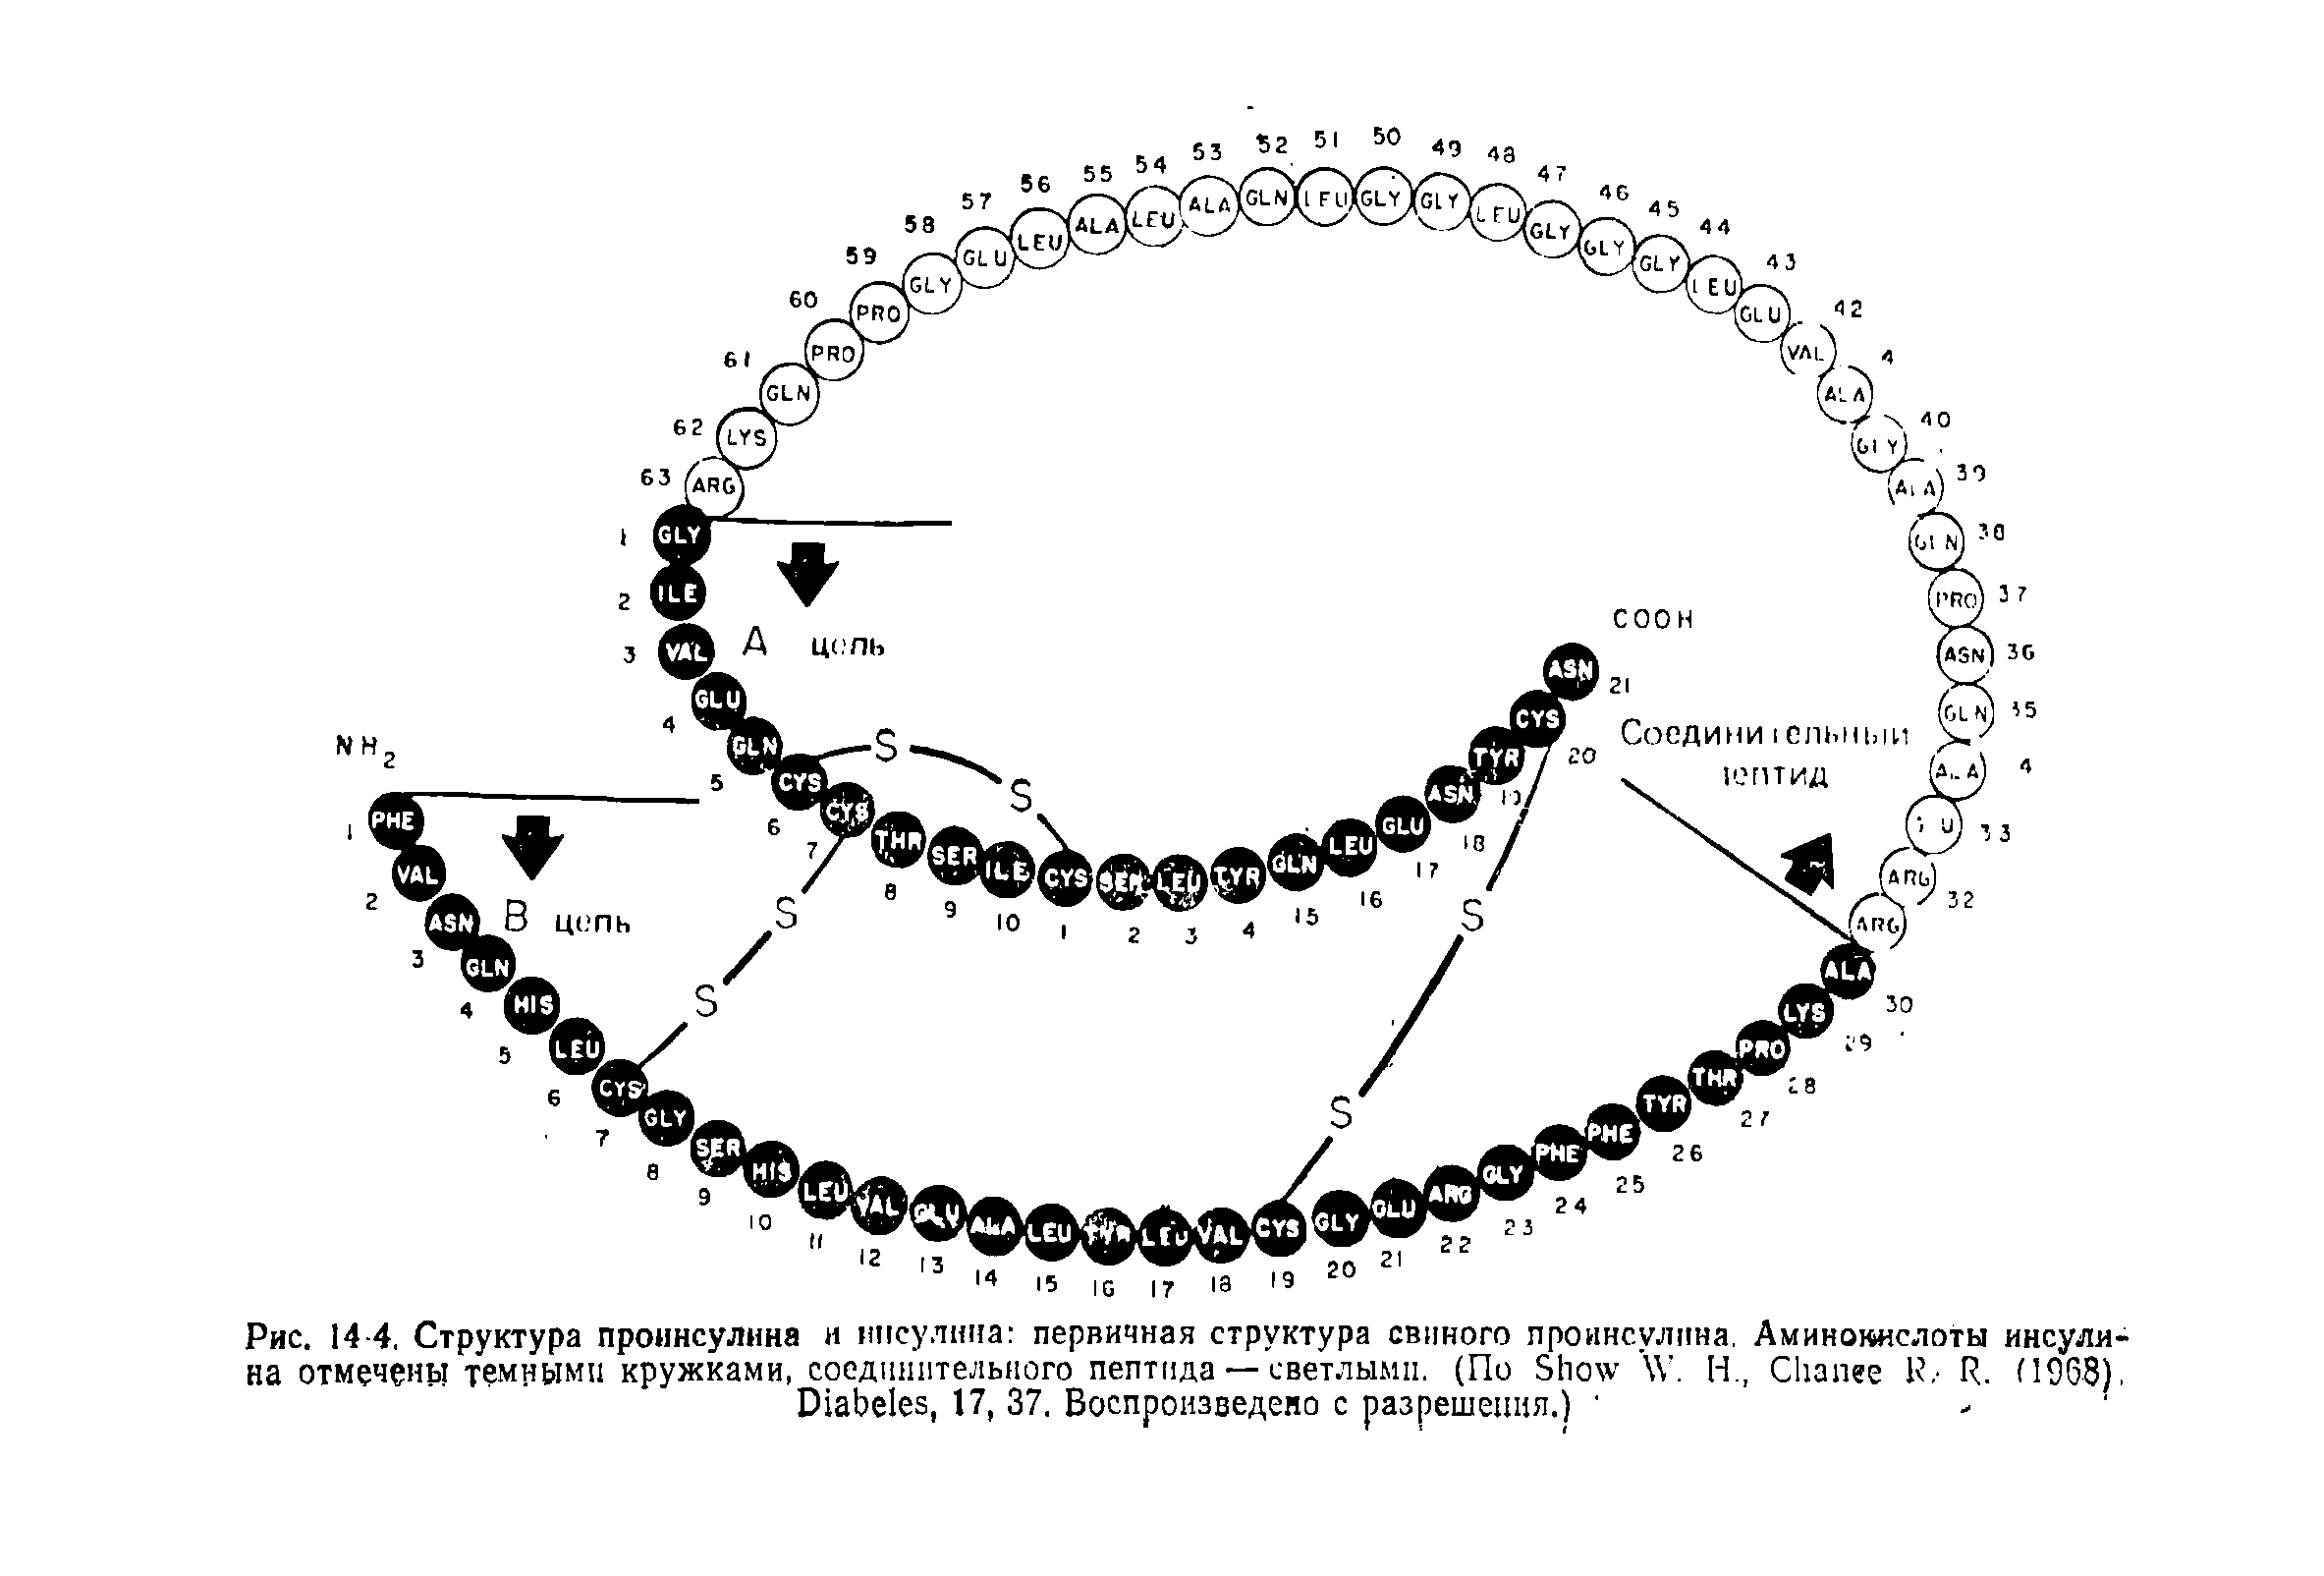 Рис. 14-4. Структура проинсулина и инсулина первичная структура свиного проинсулпна. Аминокислоты инсулина отмечены темными кружками, соединительного пептида — светлыми. (По S W. Н., C R. H9G8).